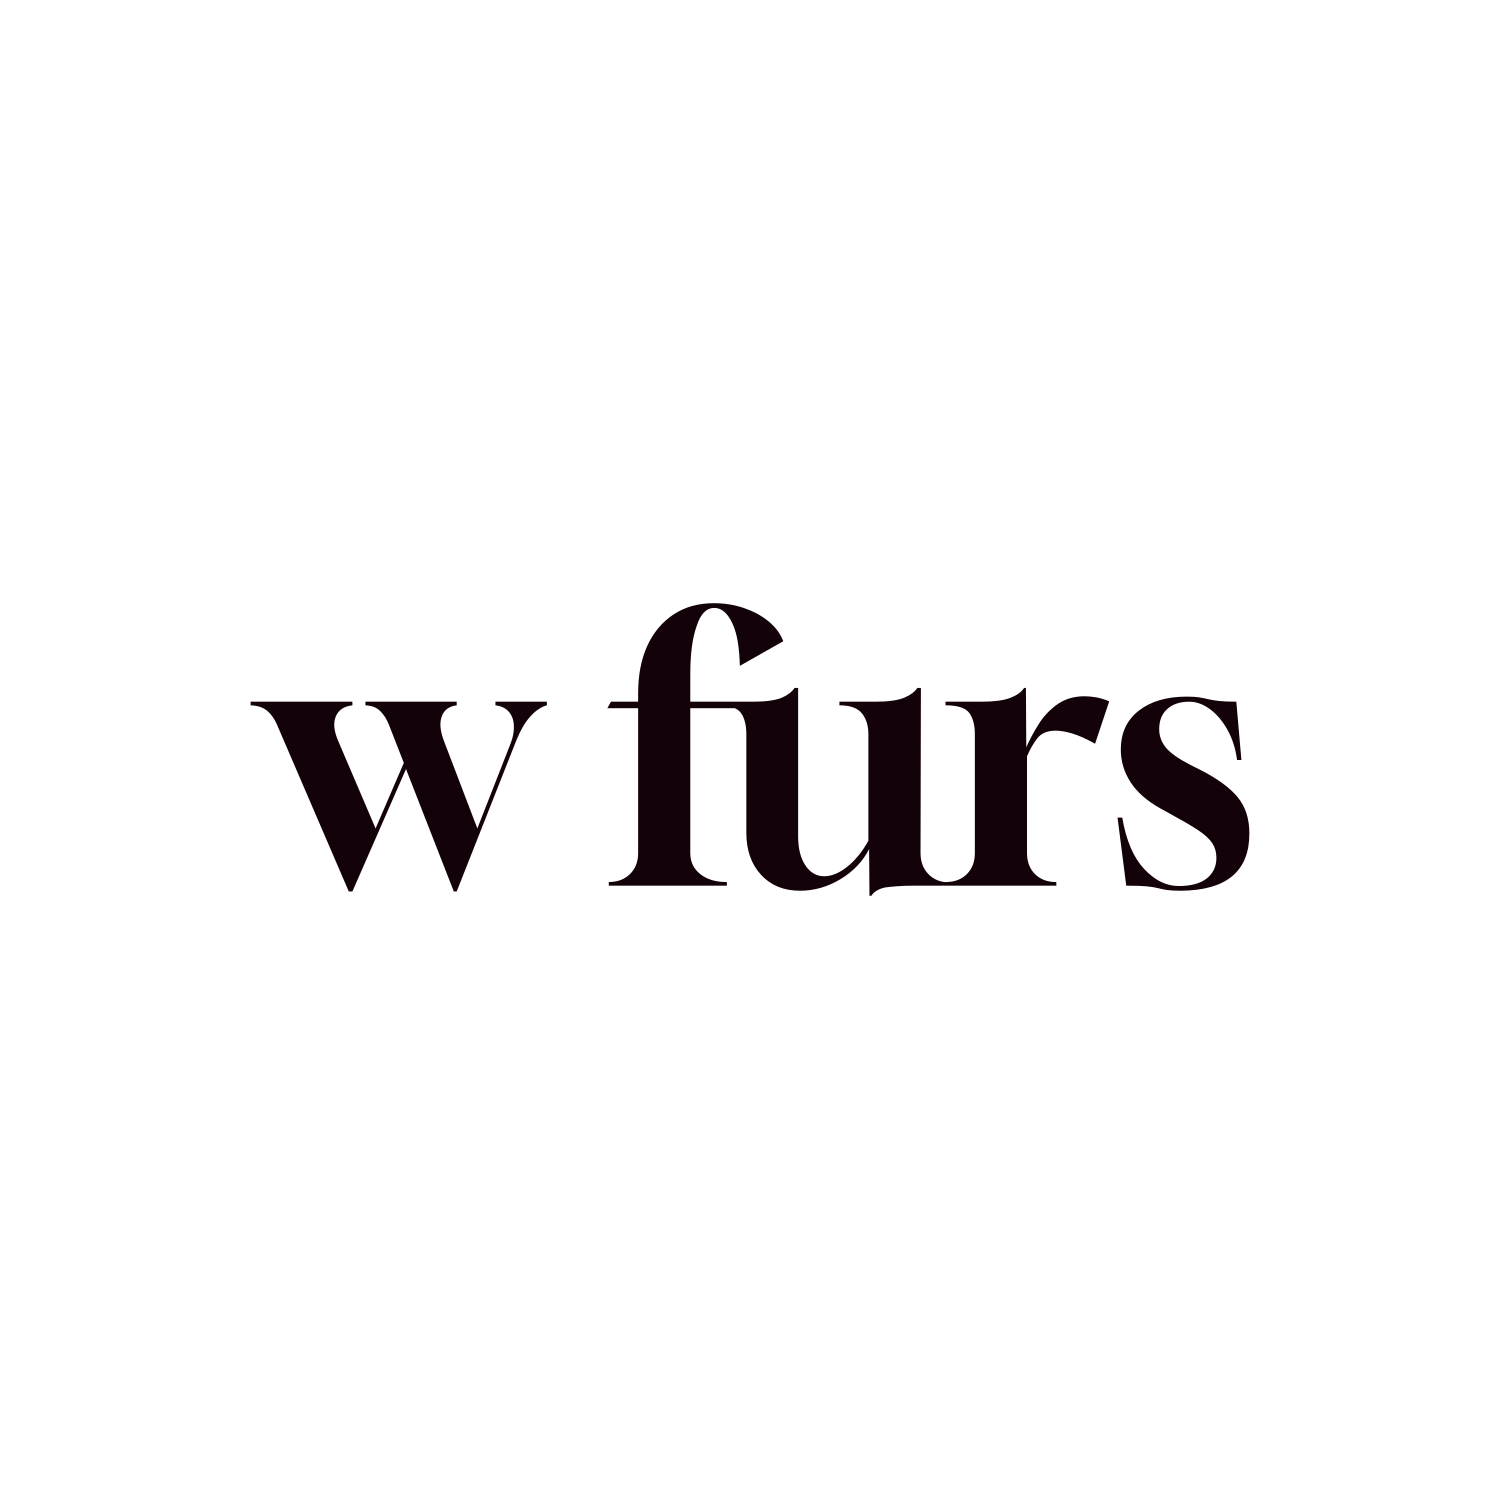 wfurs.com for sale